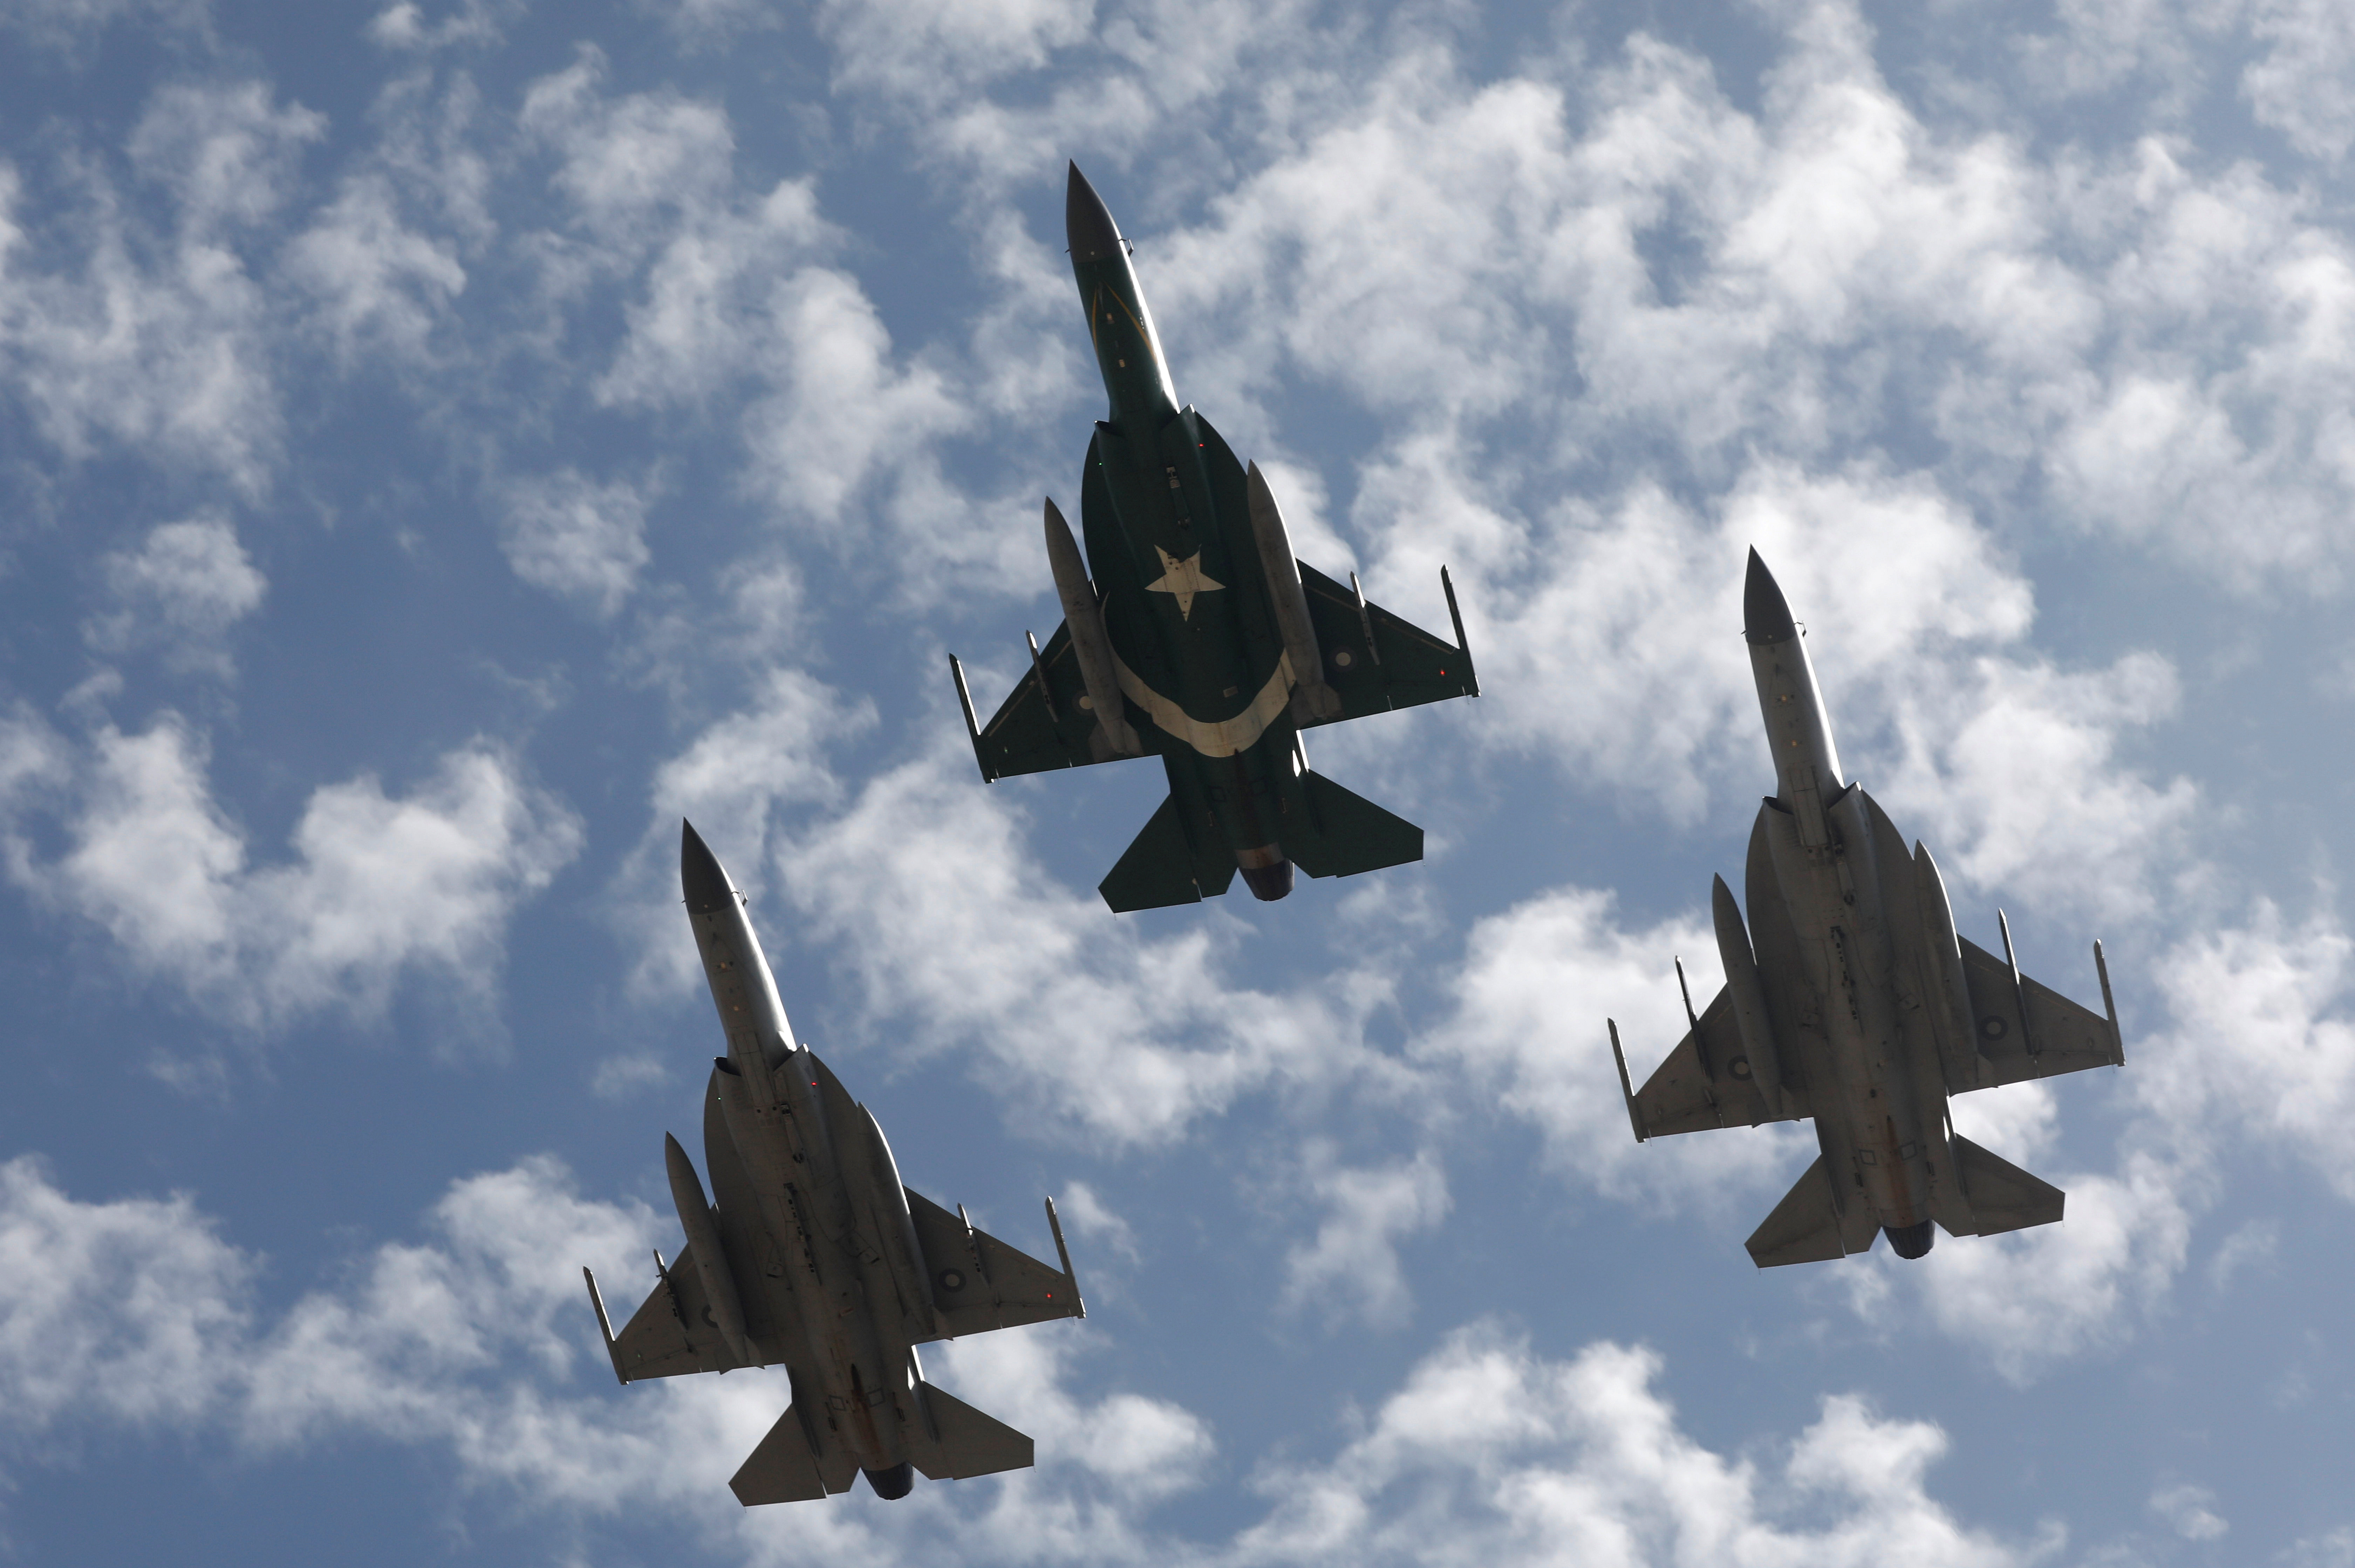 El JF-17 es un avión de combate de tercera generación desarrollado junto a la fuerza aérea de Pakistán. (REUTERS/Akhtar Soomro)